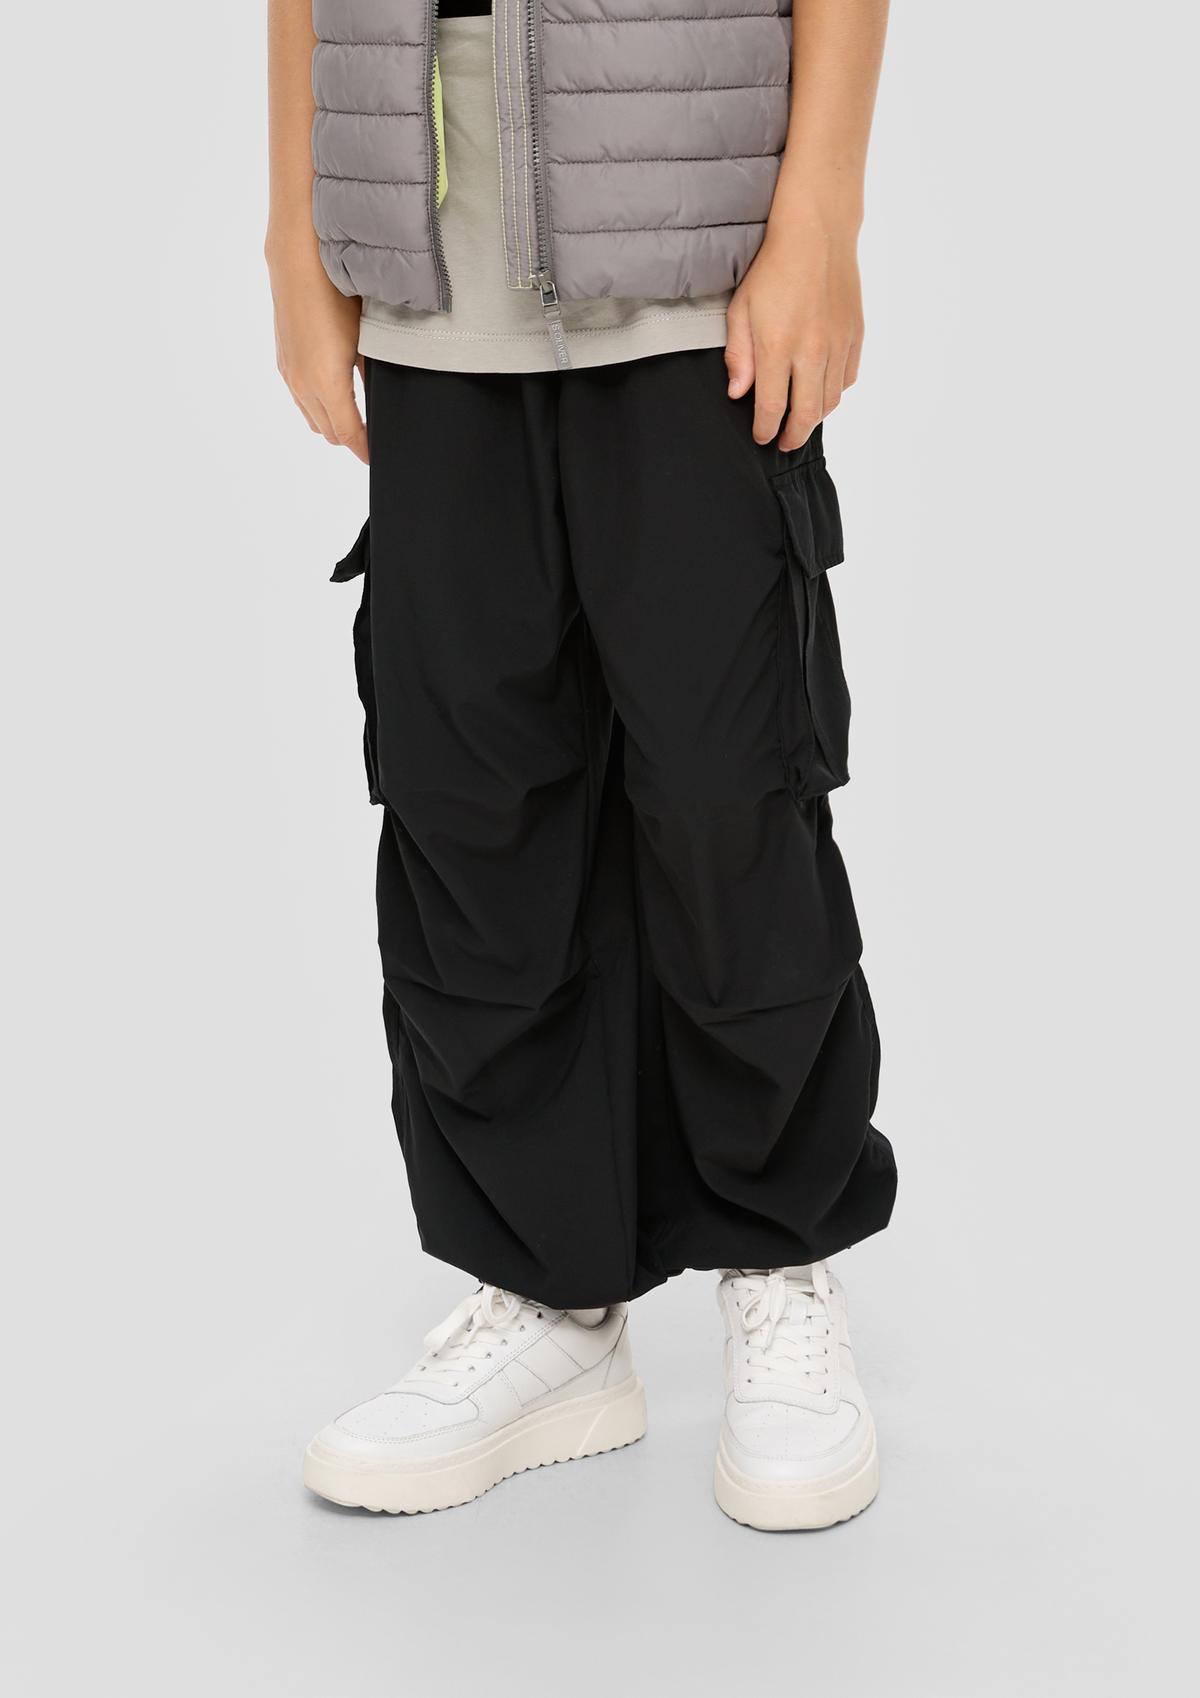 Loose : pantalon de style cargo